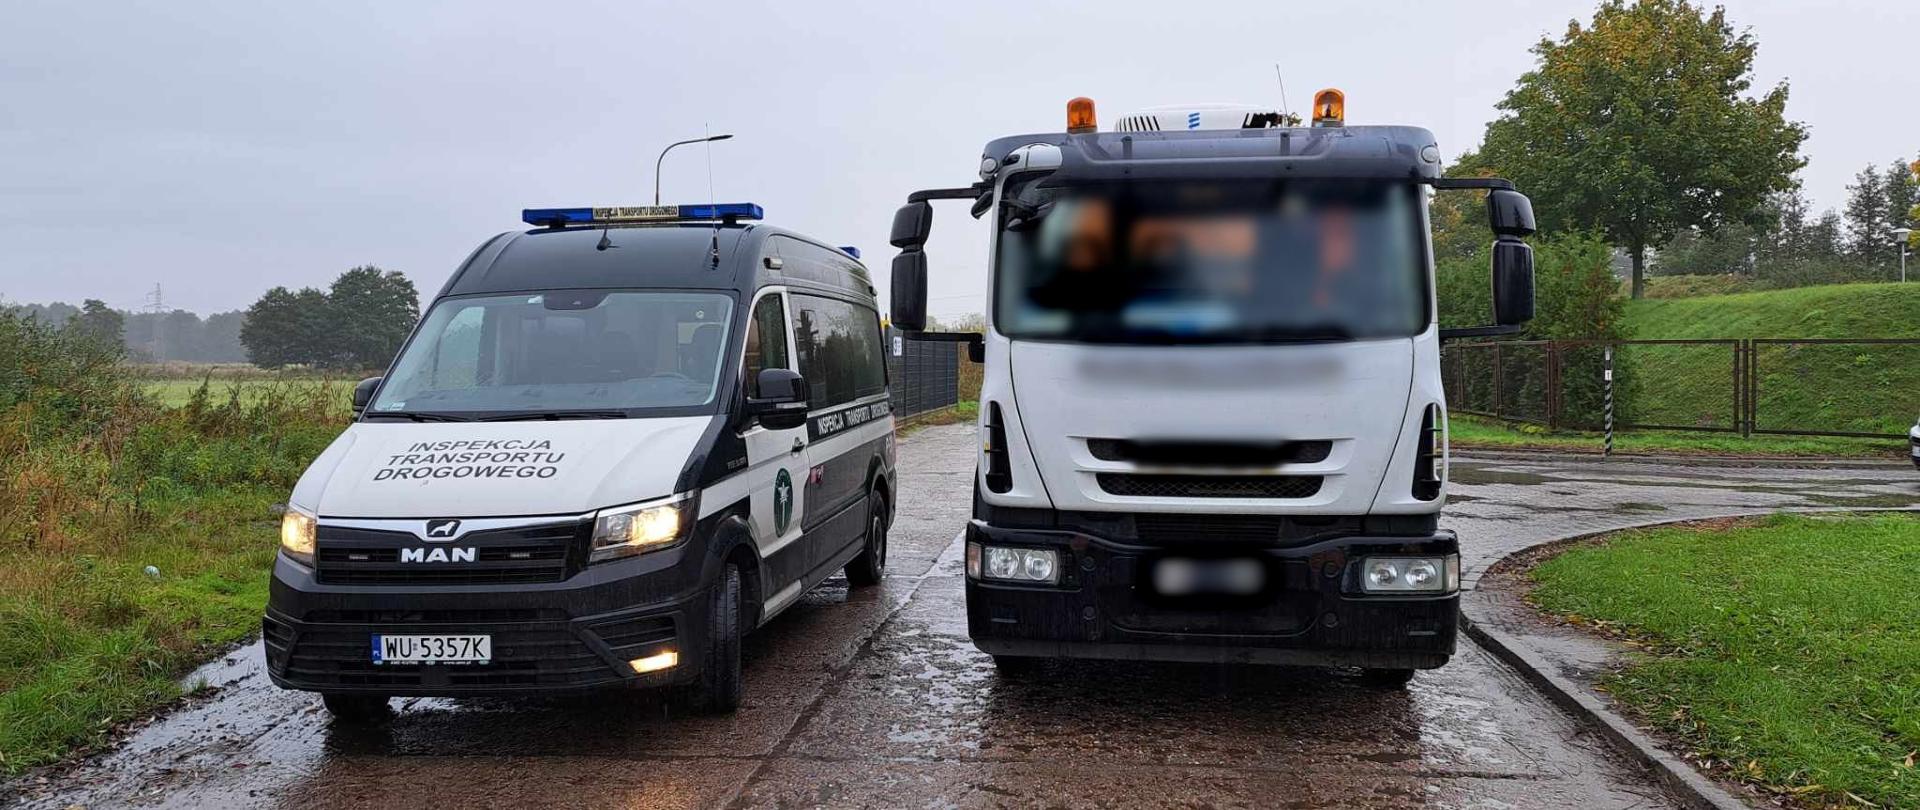 Miejsce zatrzymania do kontroli pojazdów asenizacyjnych na terenie Oleśnicy.